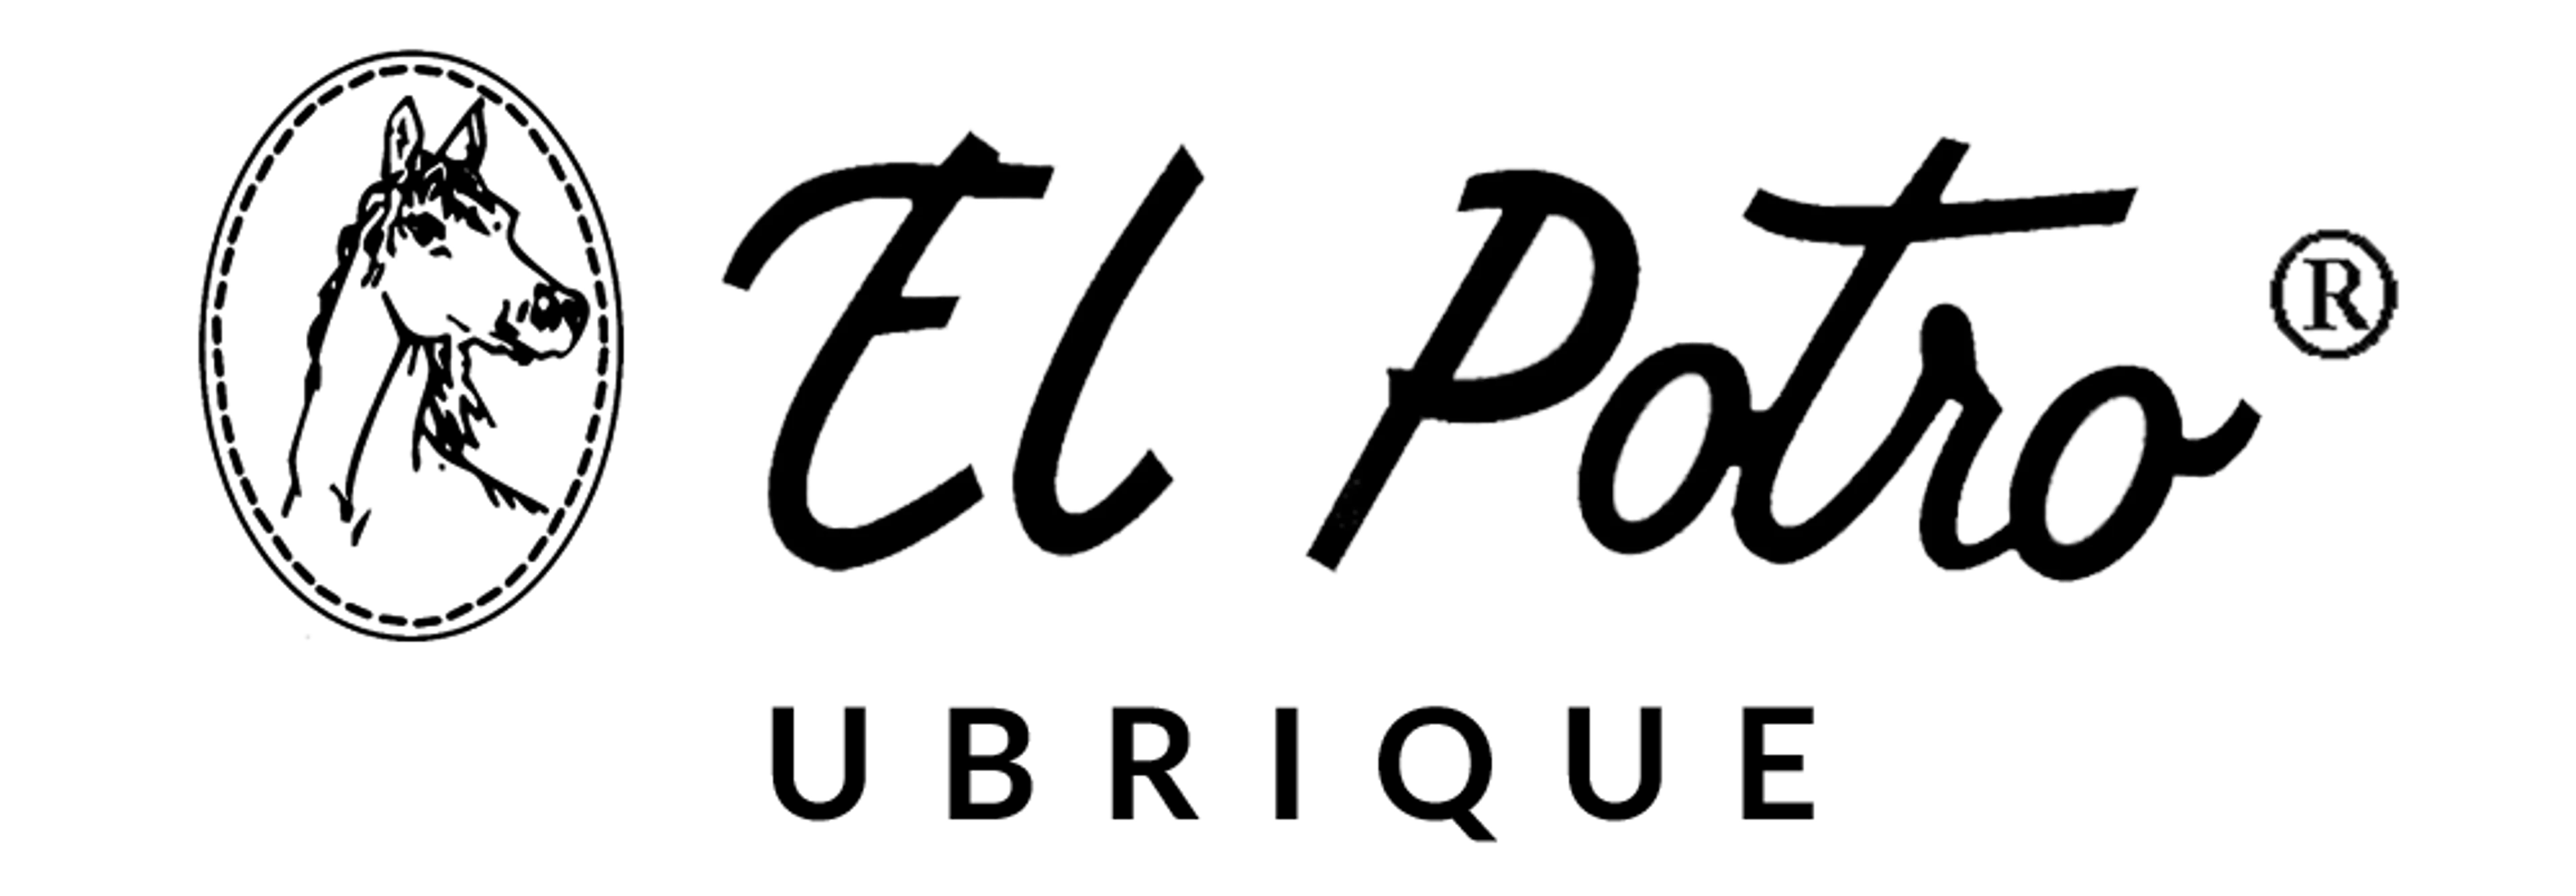 EL POTRO logo